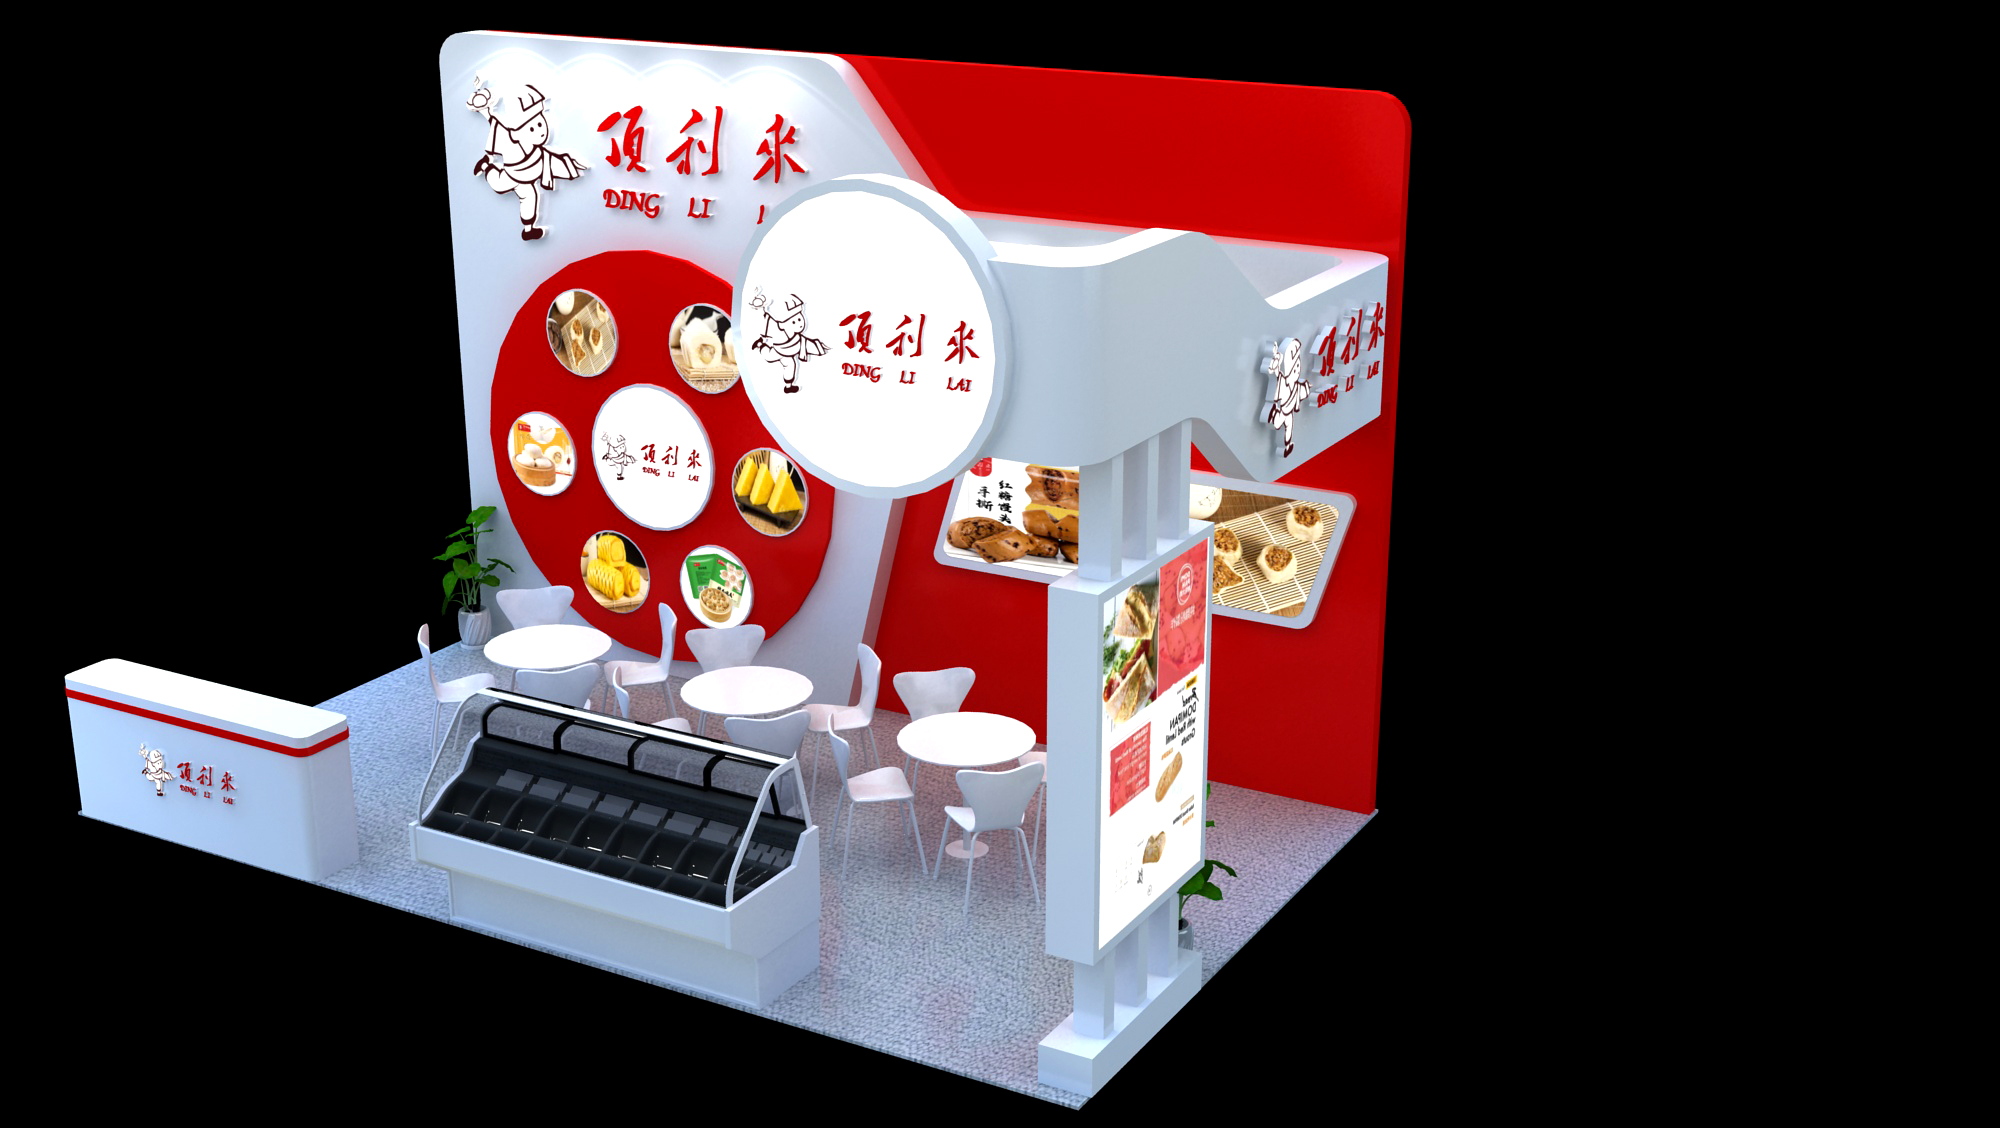 【特装欣赏合集一】 第14届歌华食材展将于8月23-25日亮相上海新国际博览中心(图72)